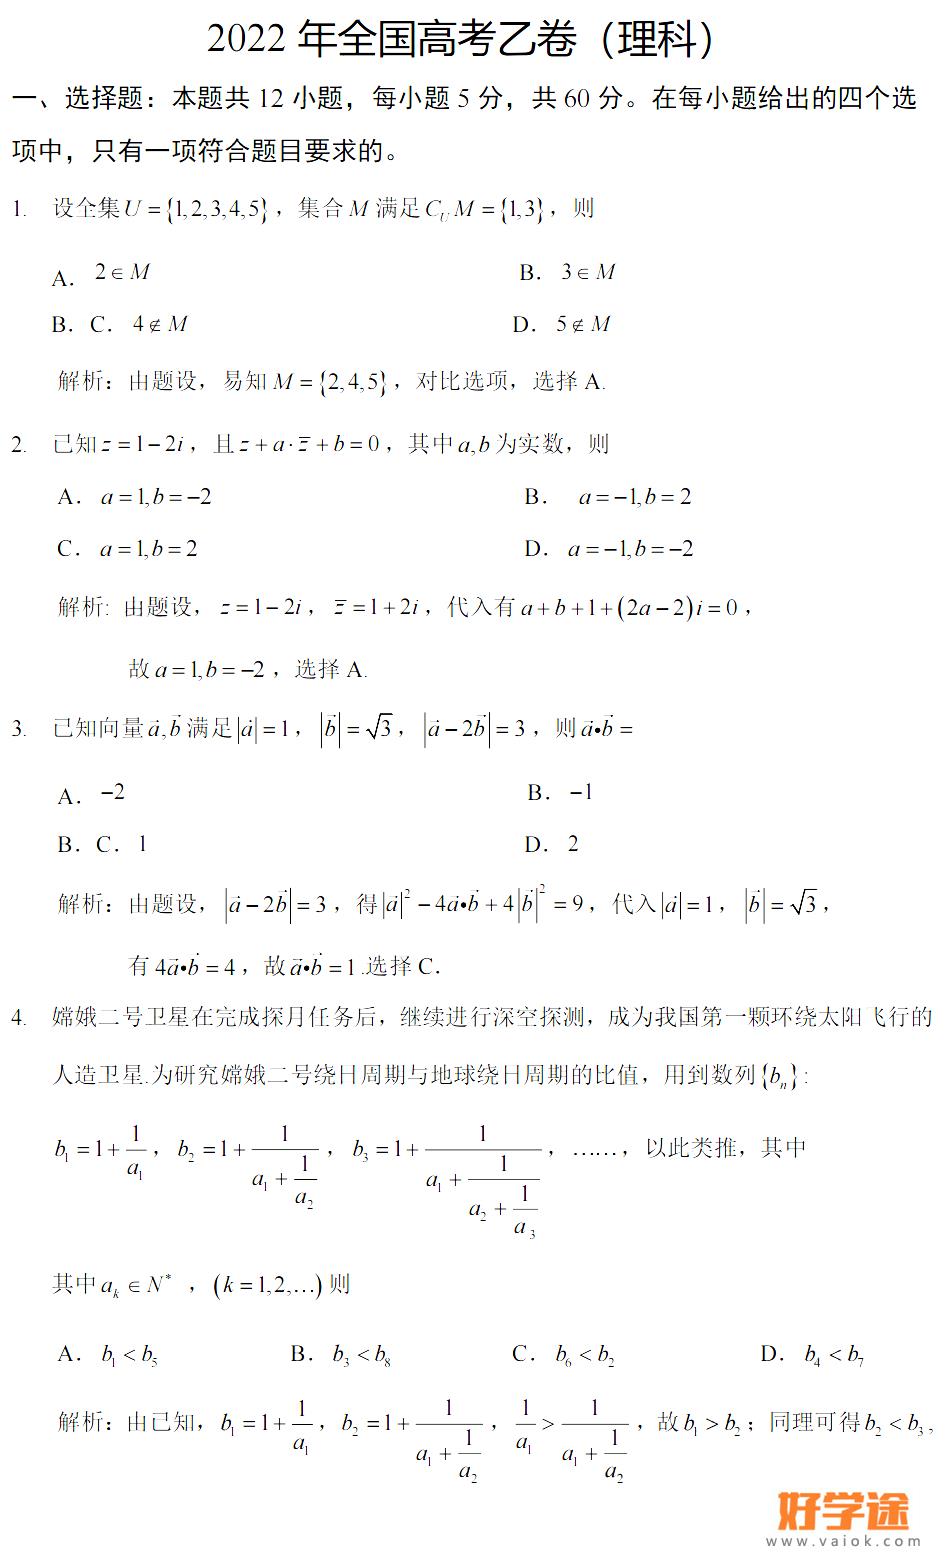 2022年宁夏高考数学试题及答案完整版(附答案和图片和文字版）